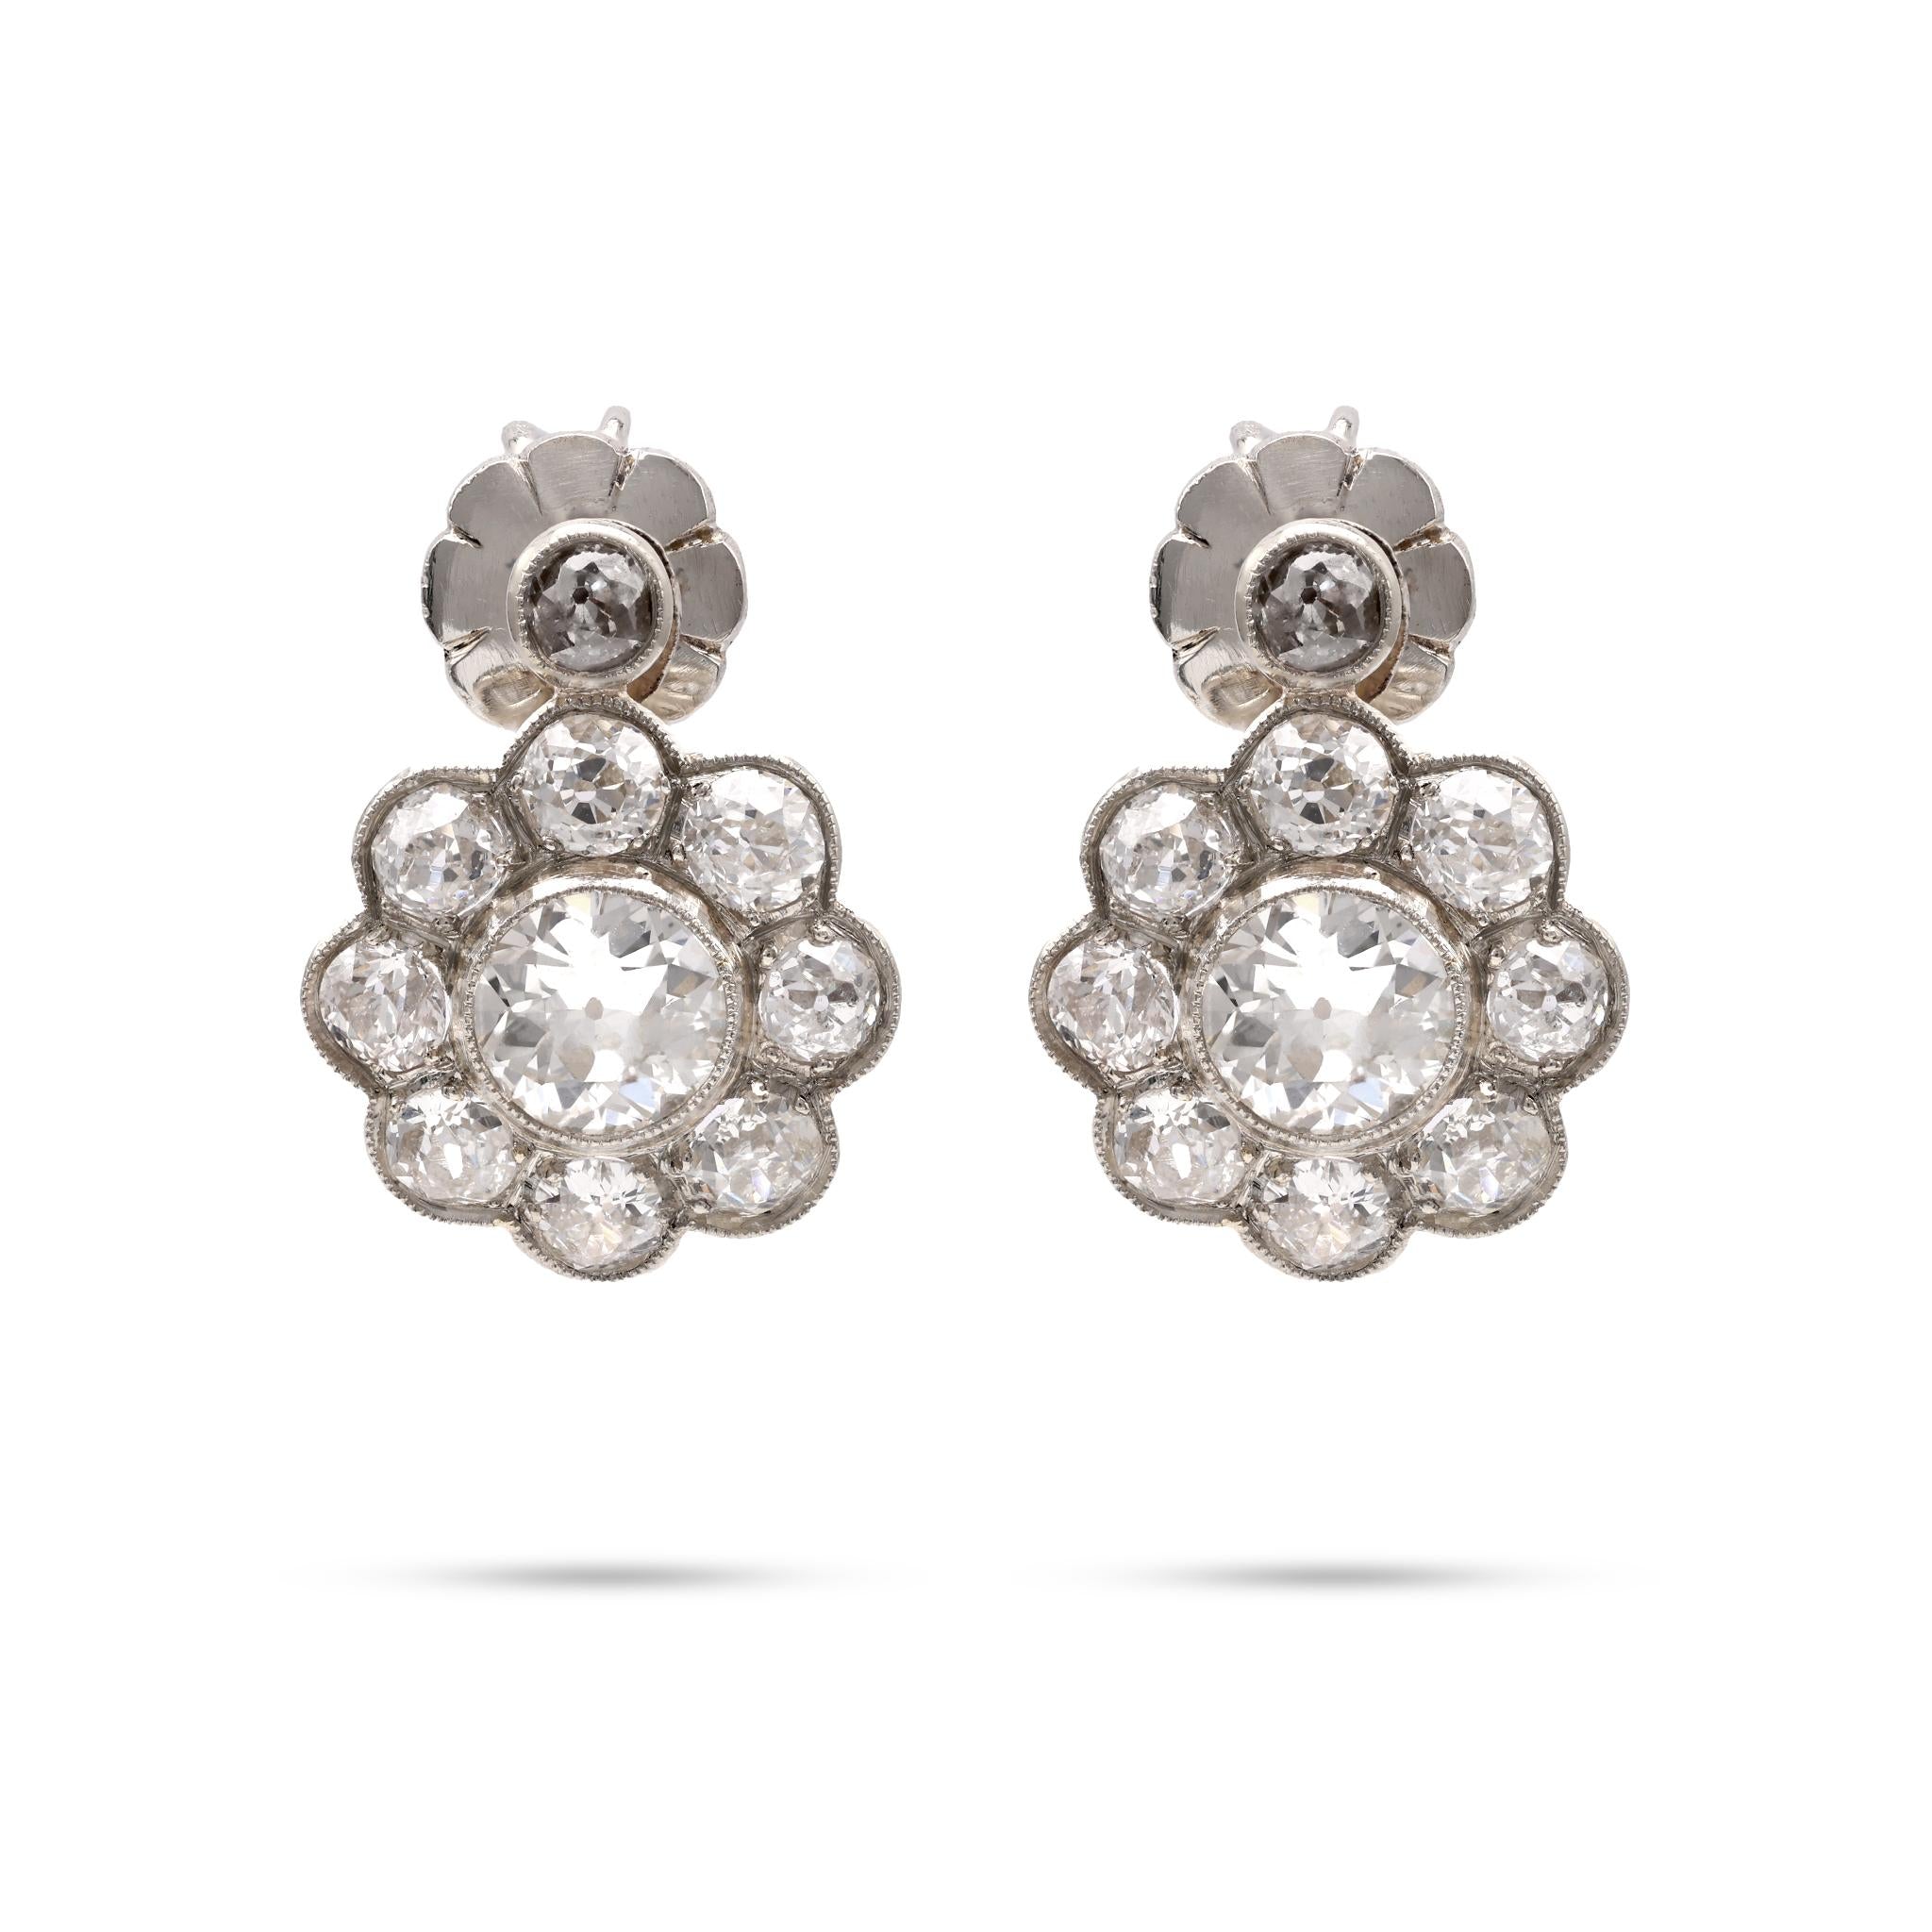 Antique 2.6 Carat Diamond Platinum Cluster Earrings